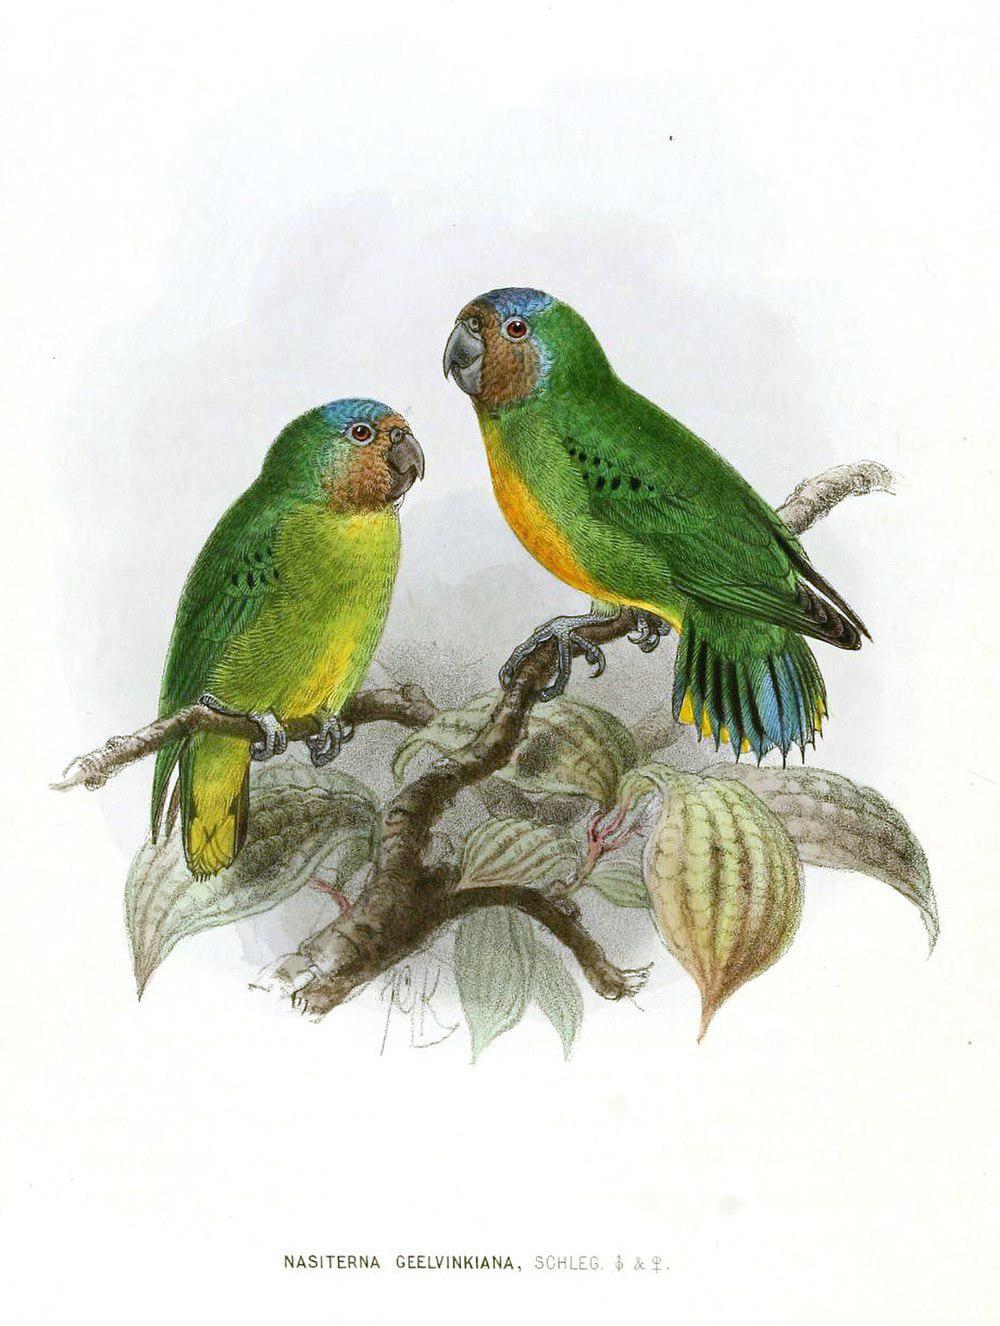 吉温侏鹦鹉 / Geelvink Pygmy Parrot / Micropsitta geelvinkiana